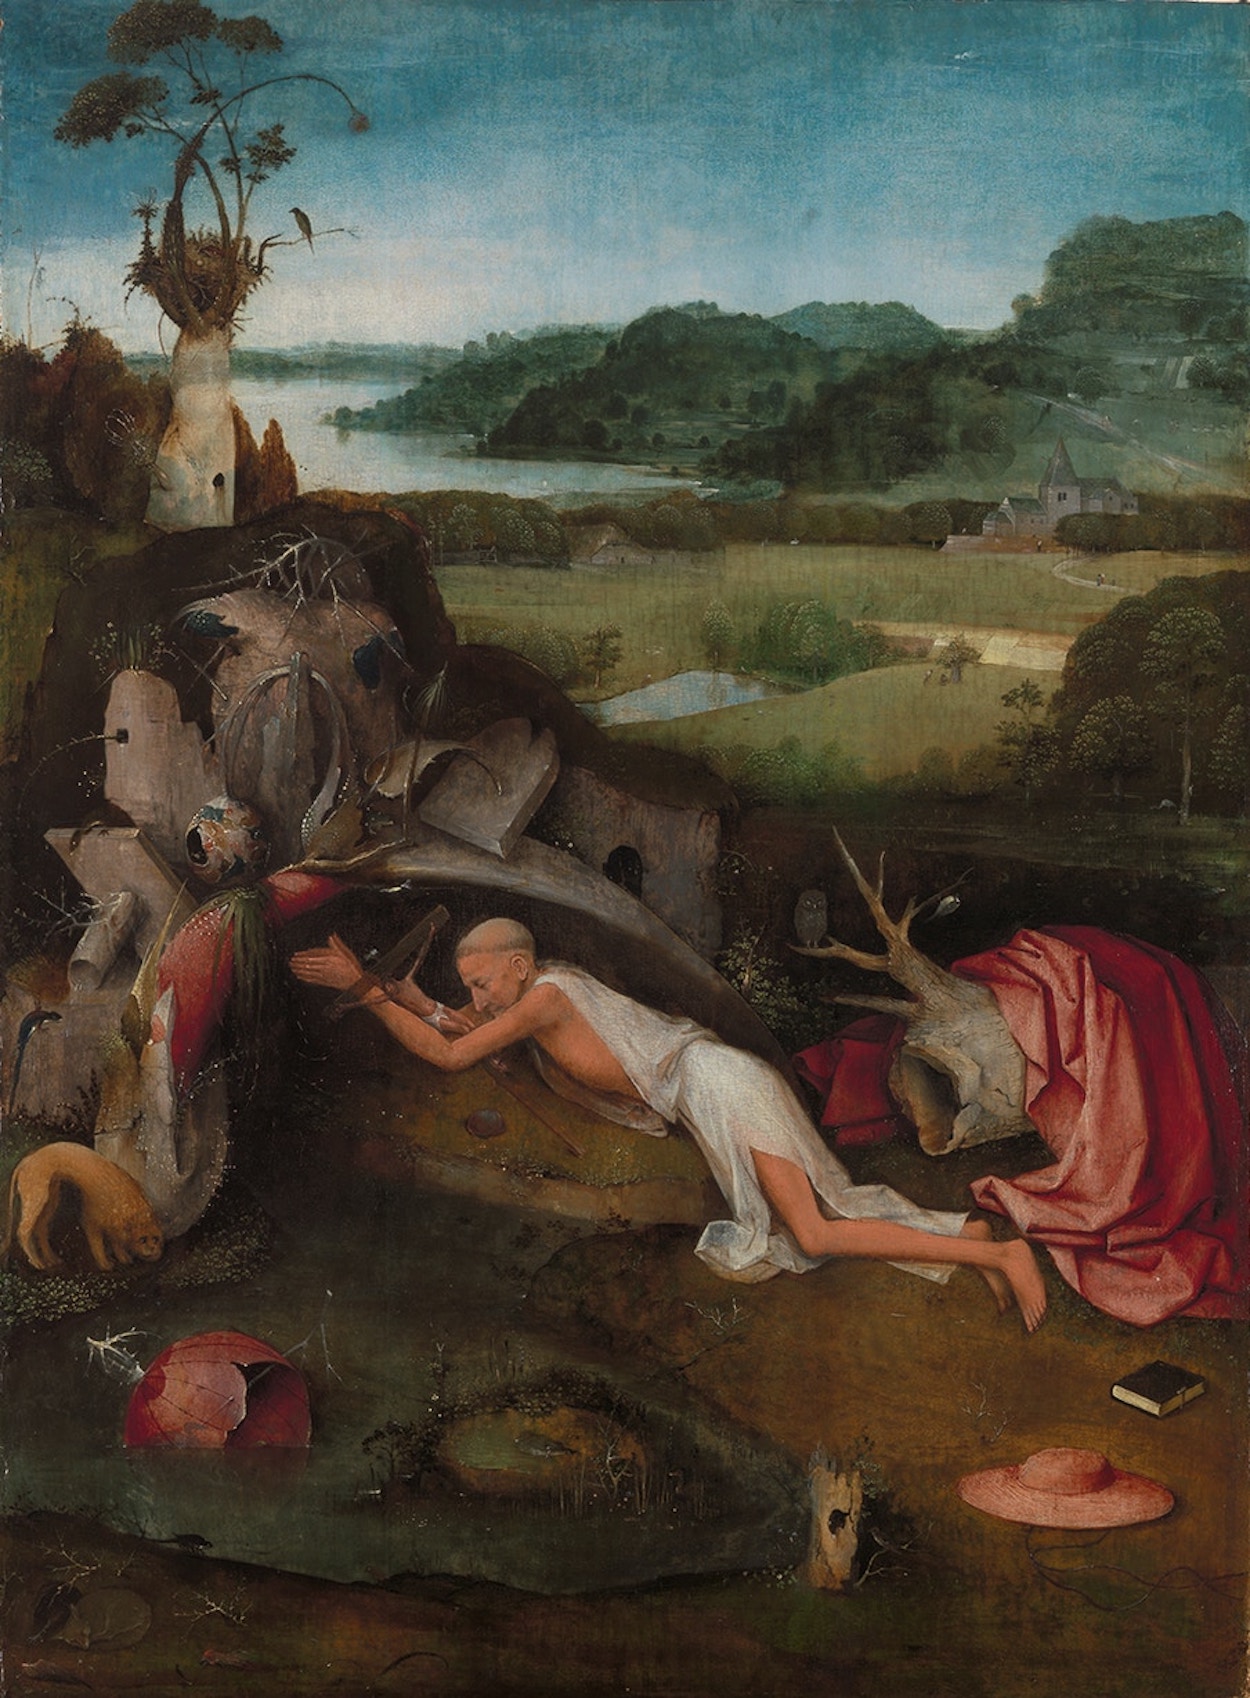 Hieronim ze Strydonu by Hieronymus Bosch - ok. 1485 - 80,1 cm x 60,6 cm 